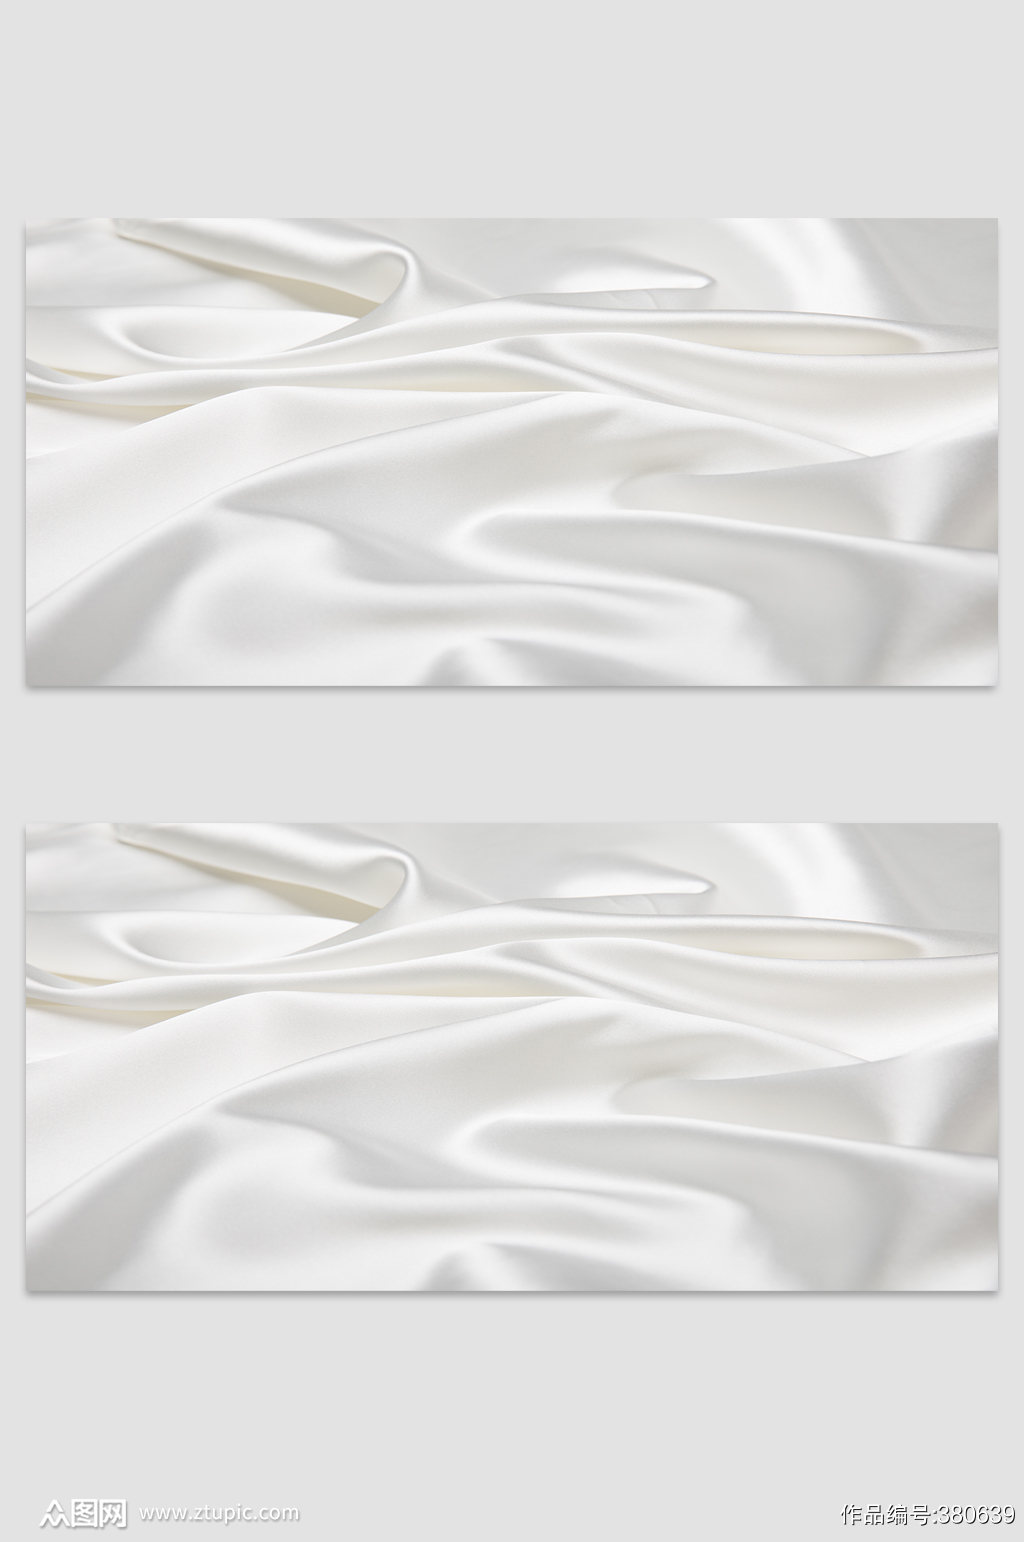 纯白色底纹丝绸背景设计模板素材 免抠背景素材下载 众图网